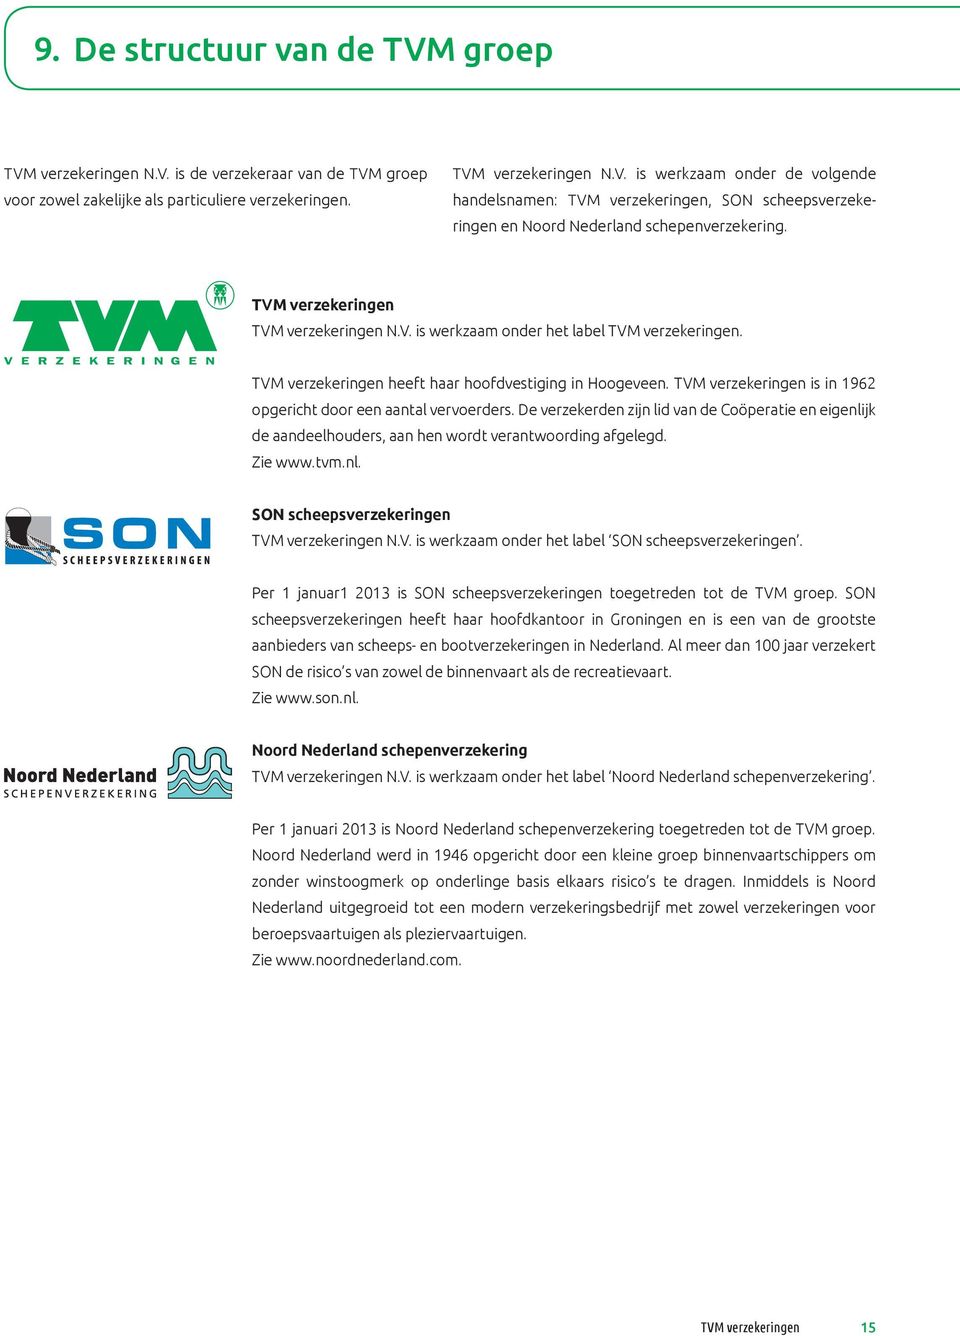 TVM verzekeringen is in 1962 opgericht door een aantal vervoerders. De verzekerden zijn lid van de Coöperatie en eigenlijk de aandeelhouders, aan hen wordt verantwoording afgelegd. Zie www.tvm.nl. SON scheepsverzekeringen TVM verzekeringen N.